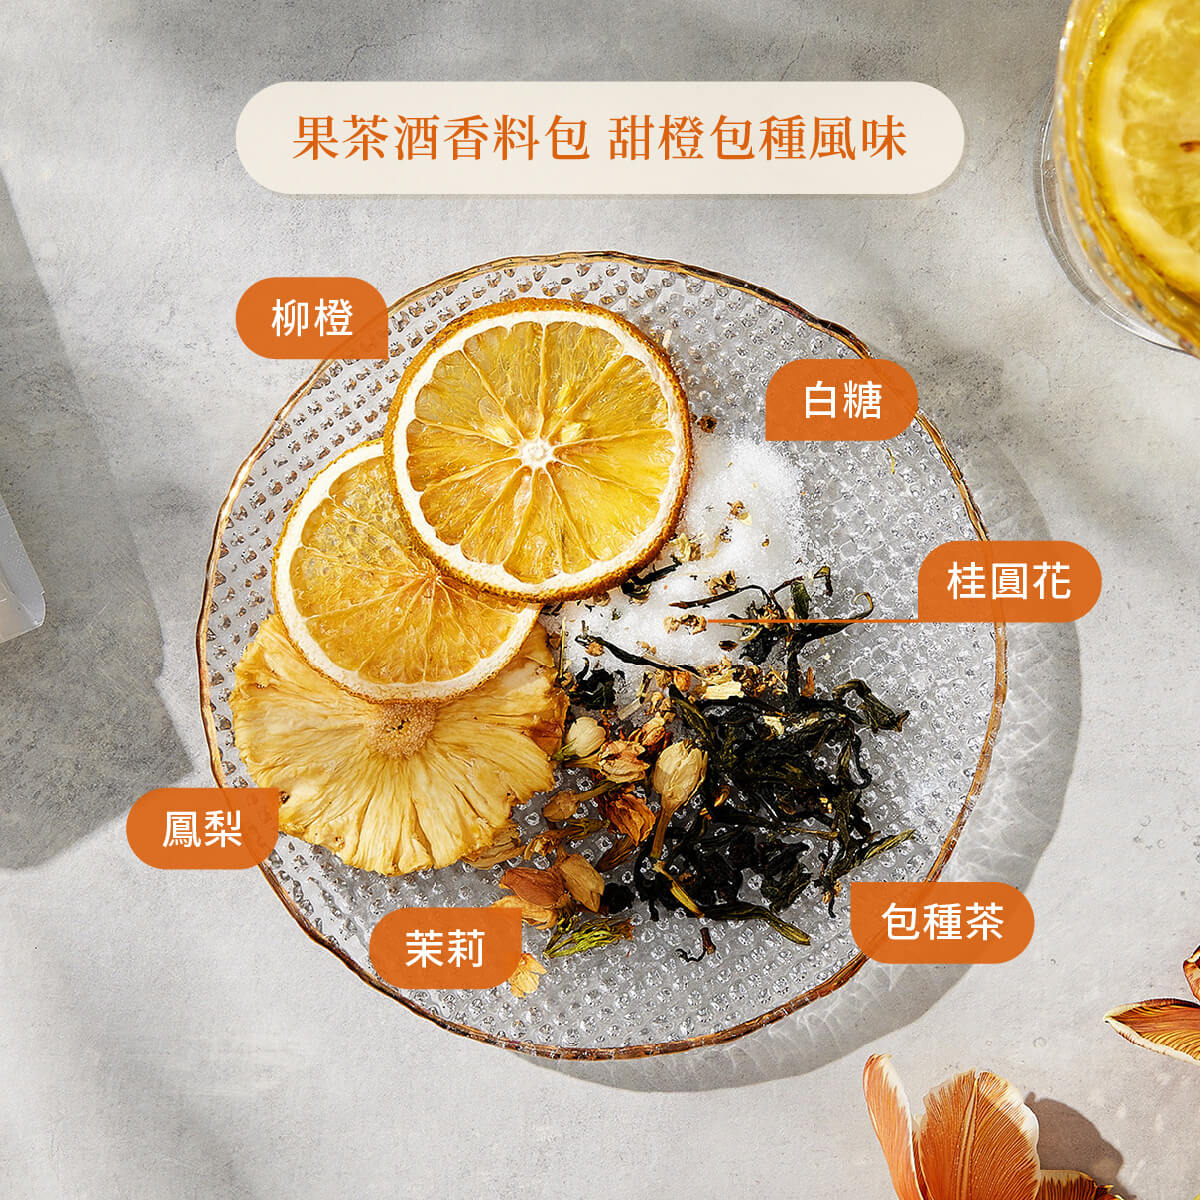 果茶酒香料包甜橙包種風味原料圖示